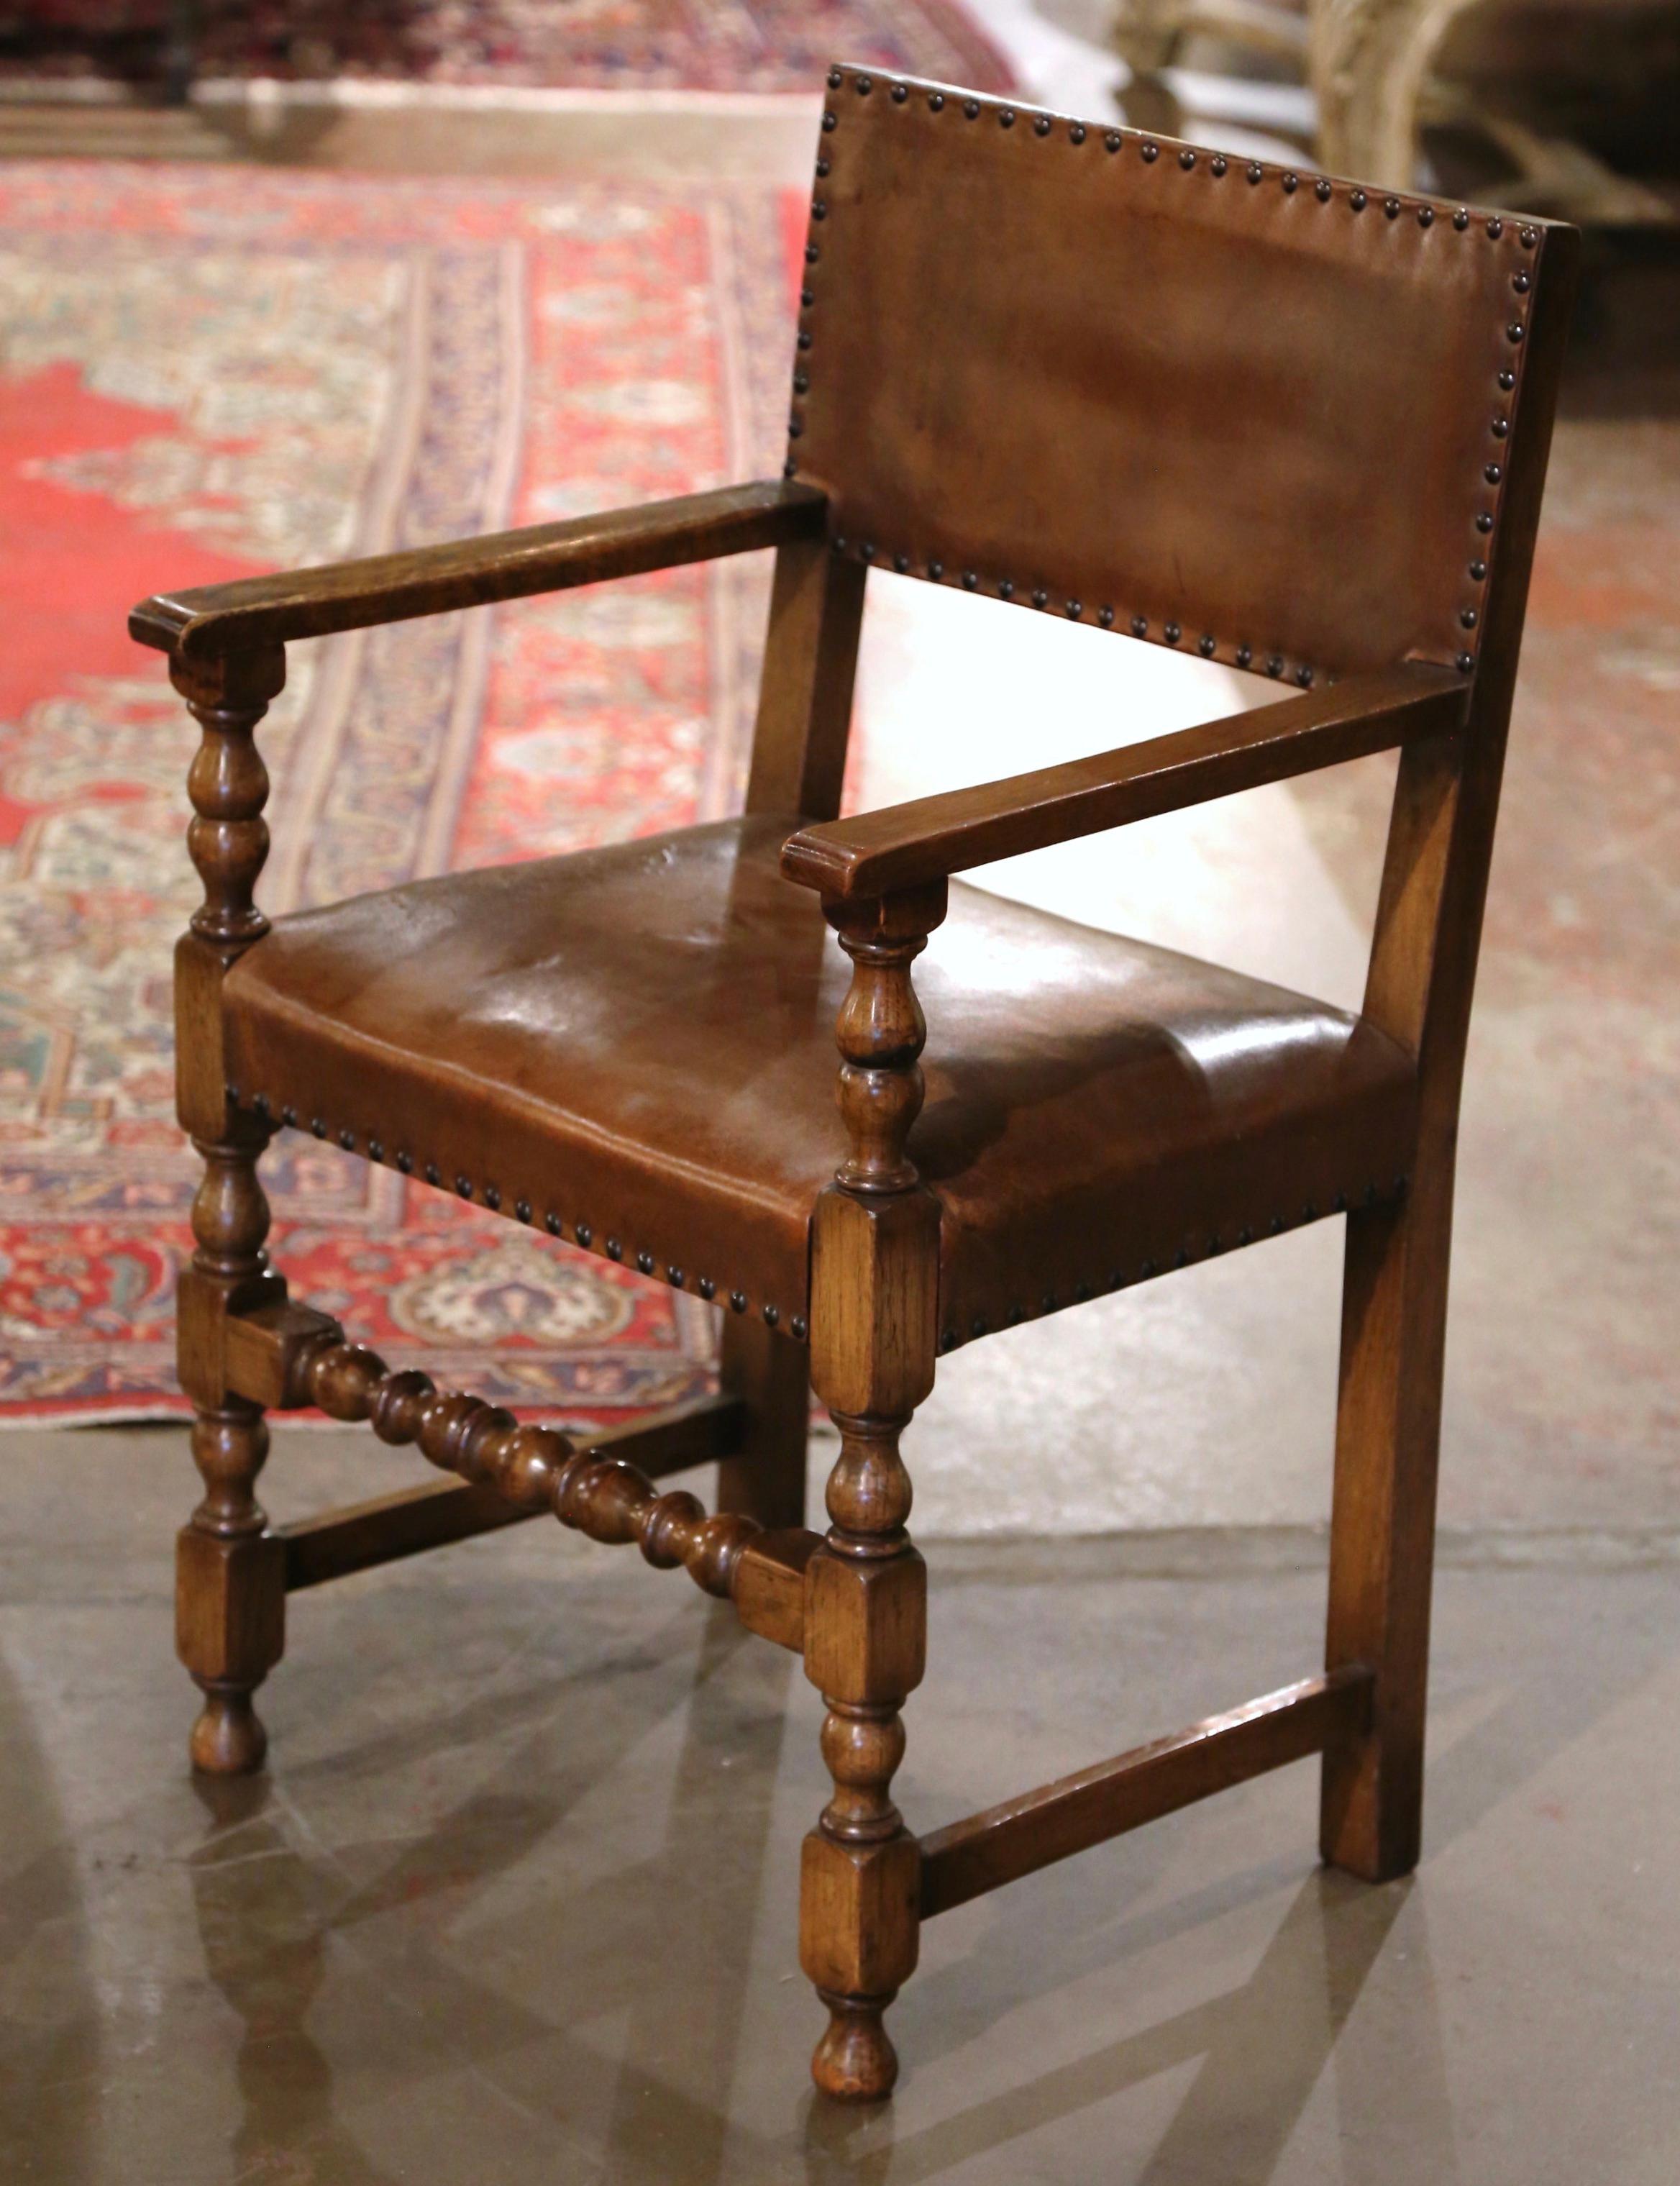 Fabriqué dans le sud de la France vers 1890, en bois de chêne, ce confortable fauteuil repose sur des pieds tournés à l'avant et sur une traverse inférieure. Il présente une large assise, des accoudoirs ouverts et un dossier rectangulaire incurvé.